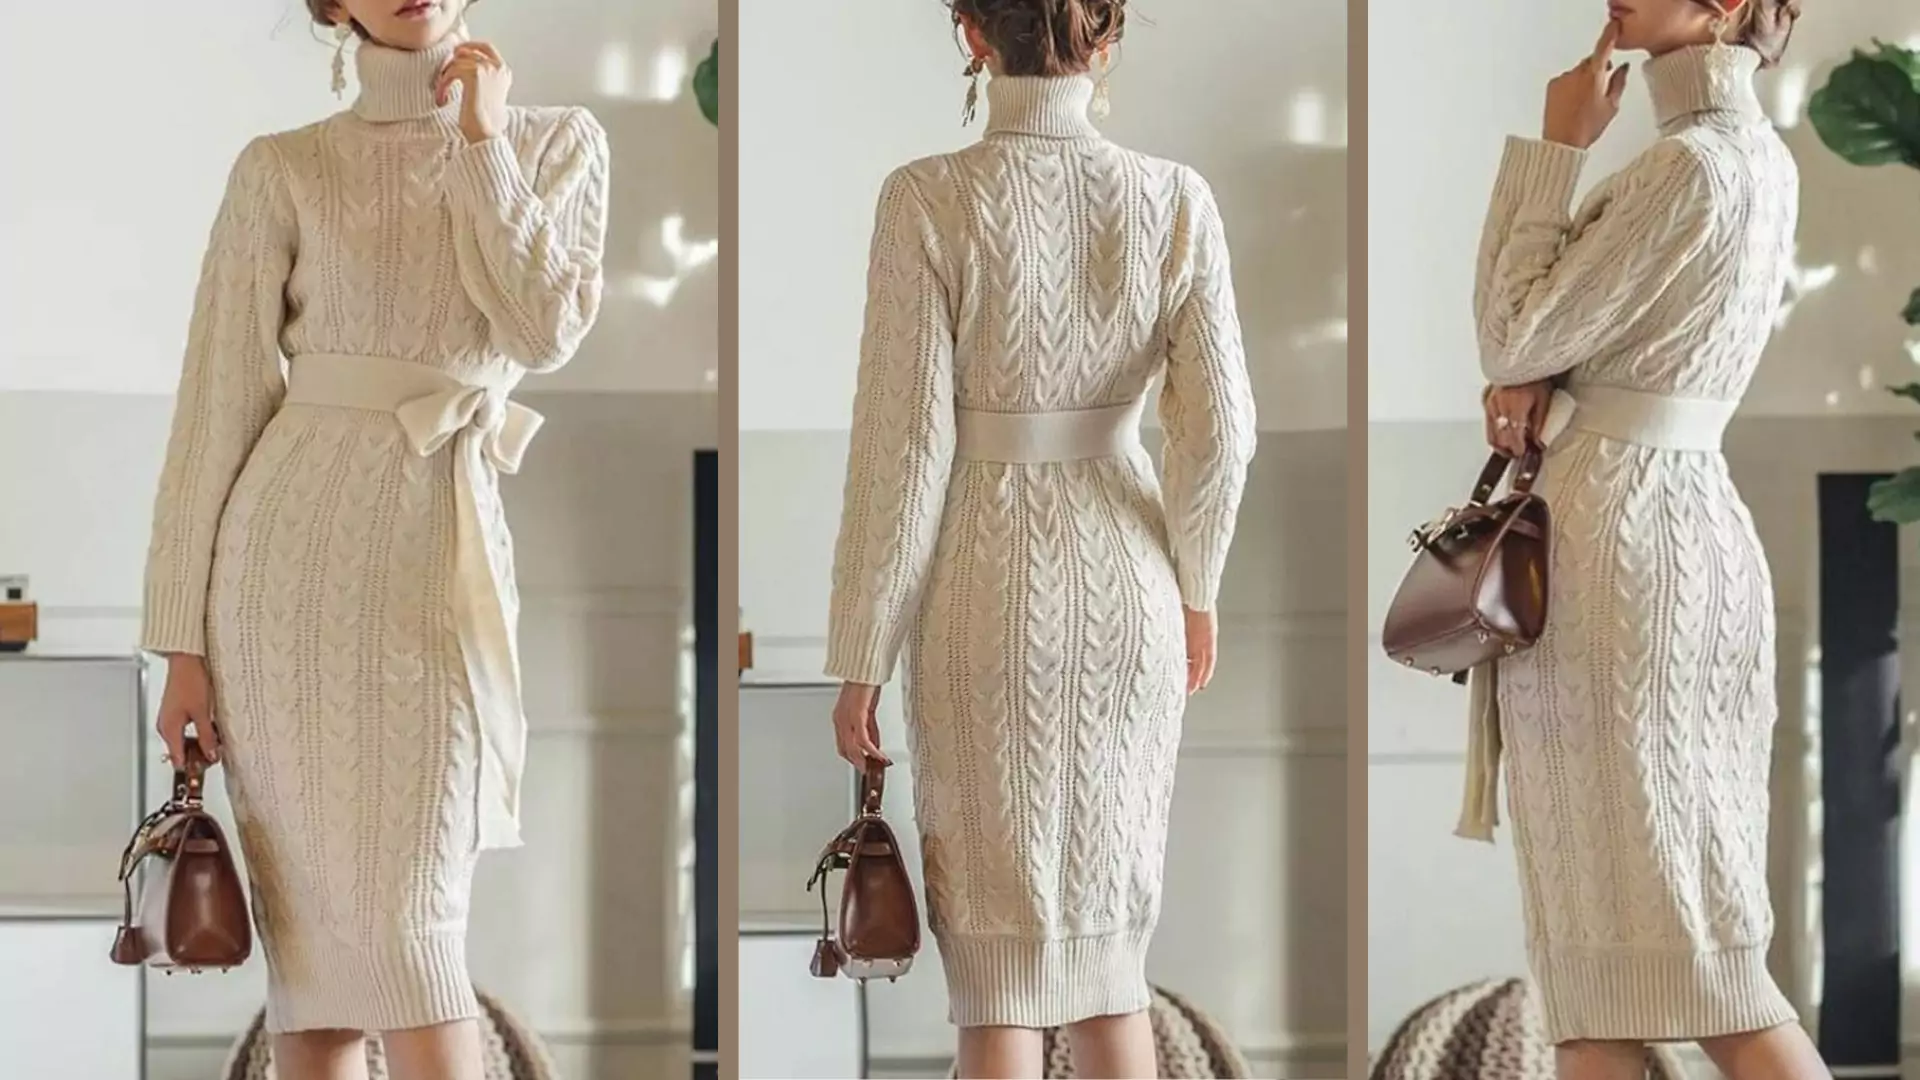 Sukienki w tym stylu uwielbia Bella Hadid. To idealna opcja na jesień, którą kupimy za mniej niż 70 zł